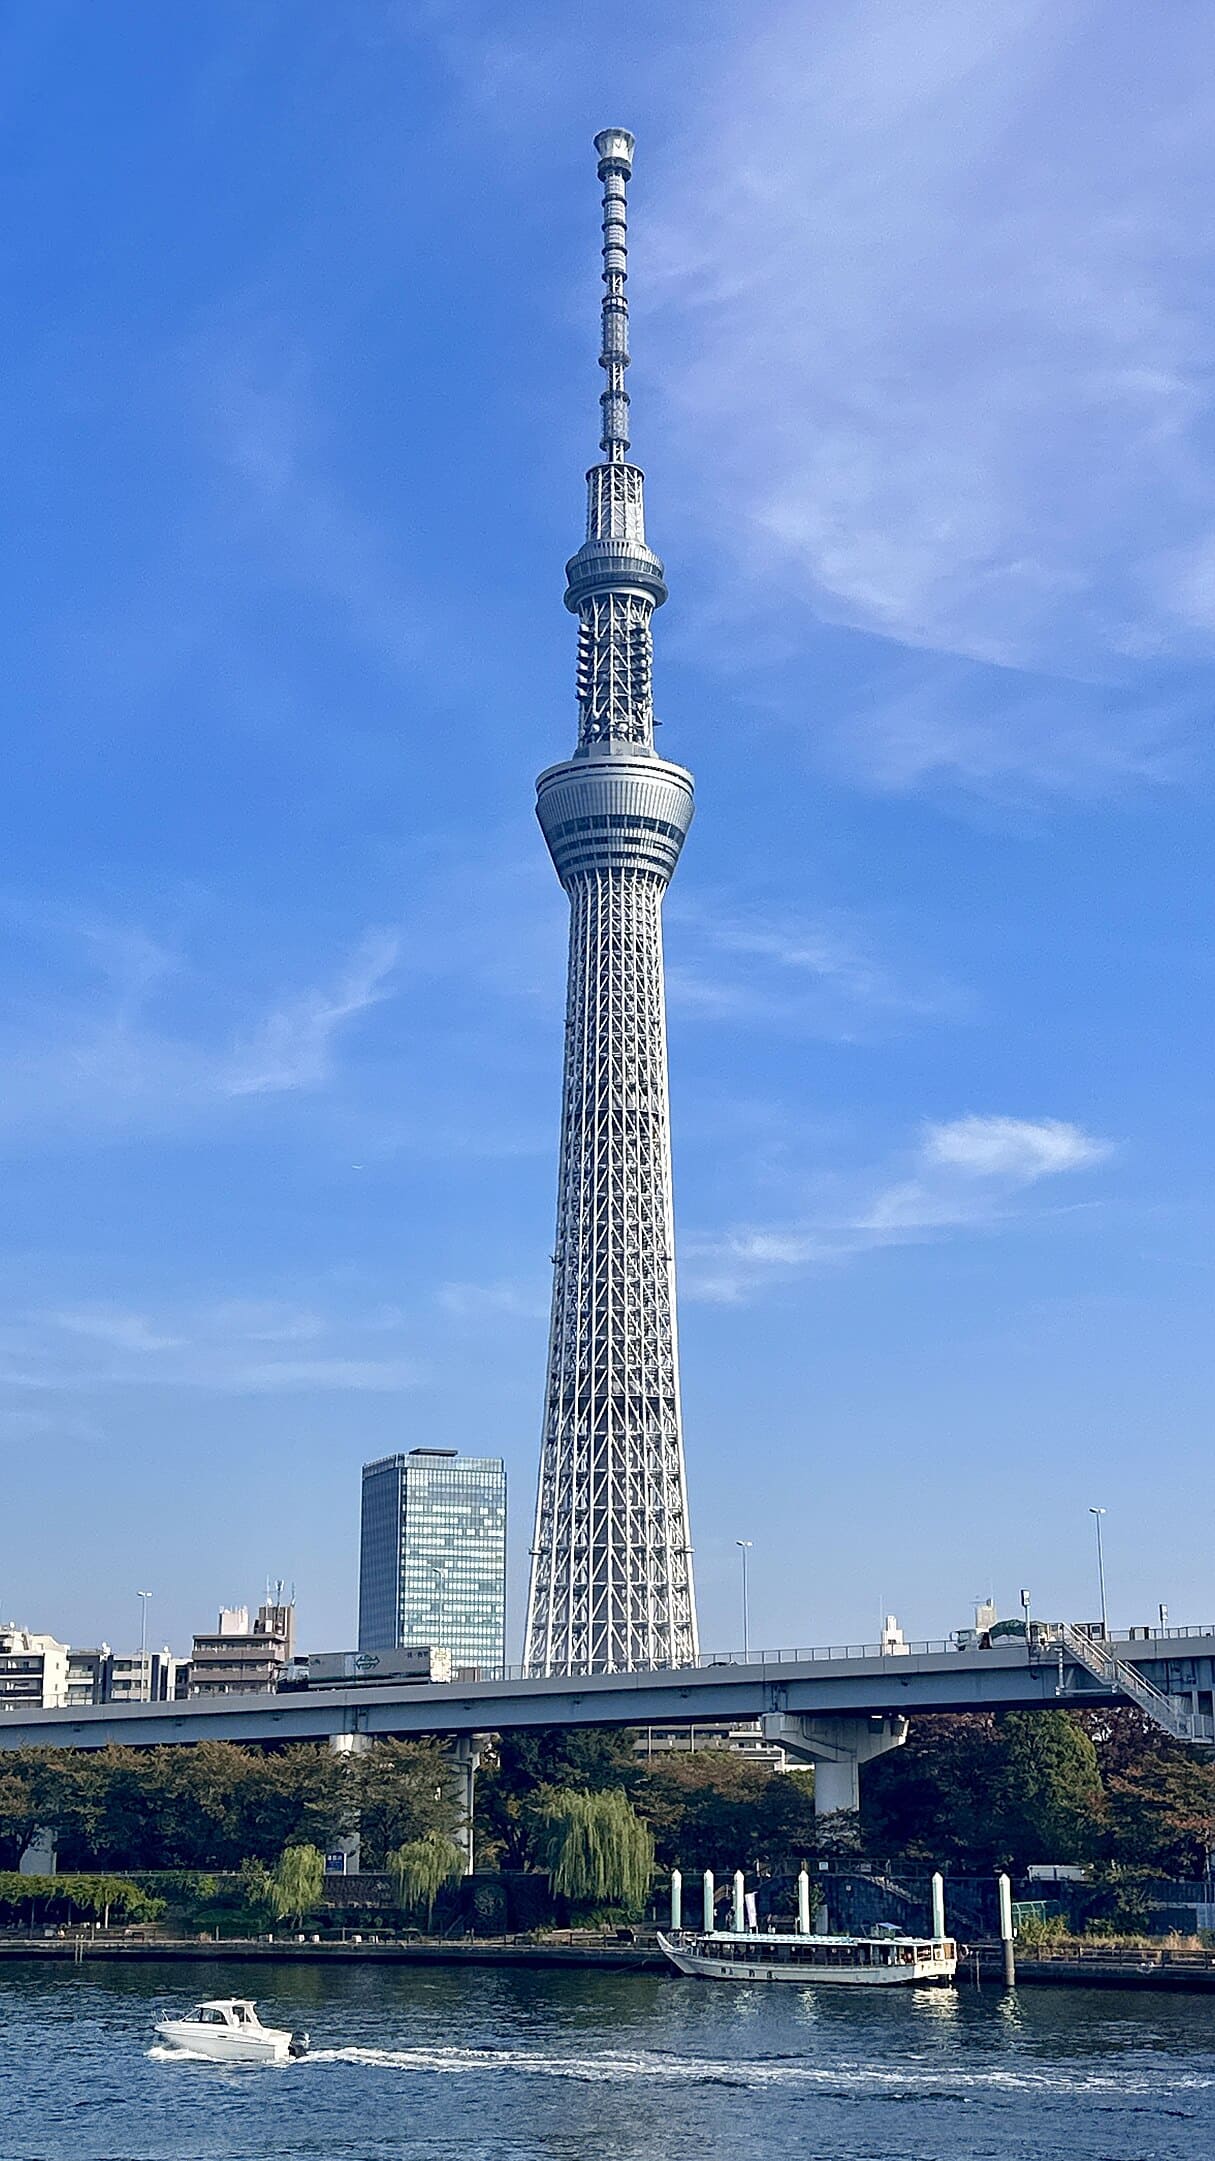 22 de maio marca o aniversário da Tokyo Skytree, a maior torre de telecomunicações do planeta. Com 634 metros de altura, a torre que fica em Tóquio, capital do Japão, faz 12 anos.  A inauguração oficial foi em 22/5/2012. E a torre logo recebeu o reconhecimento do Guinness, o livro dos recordes. 